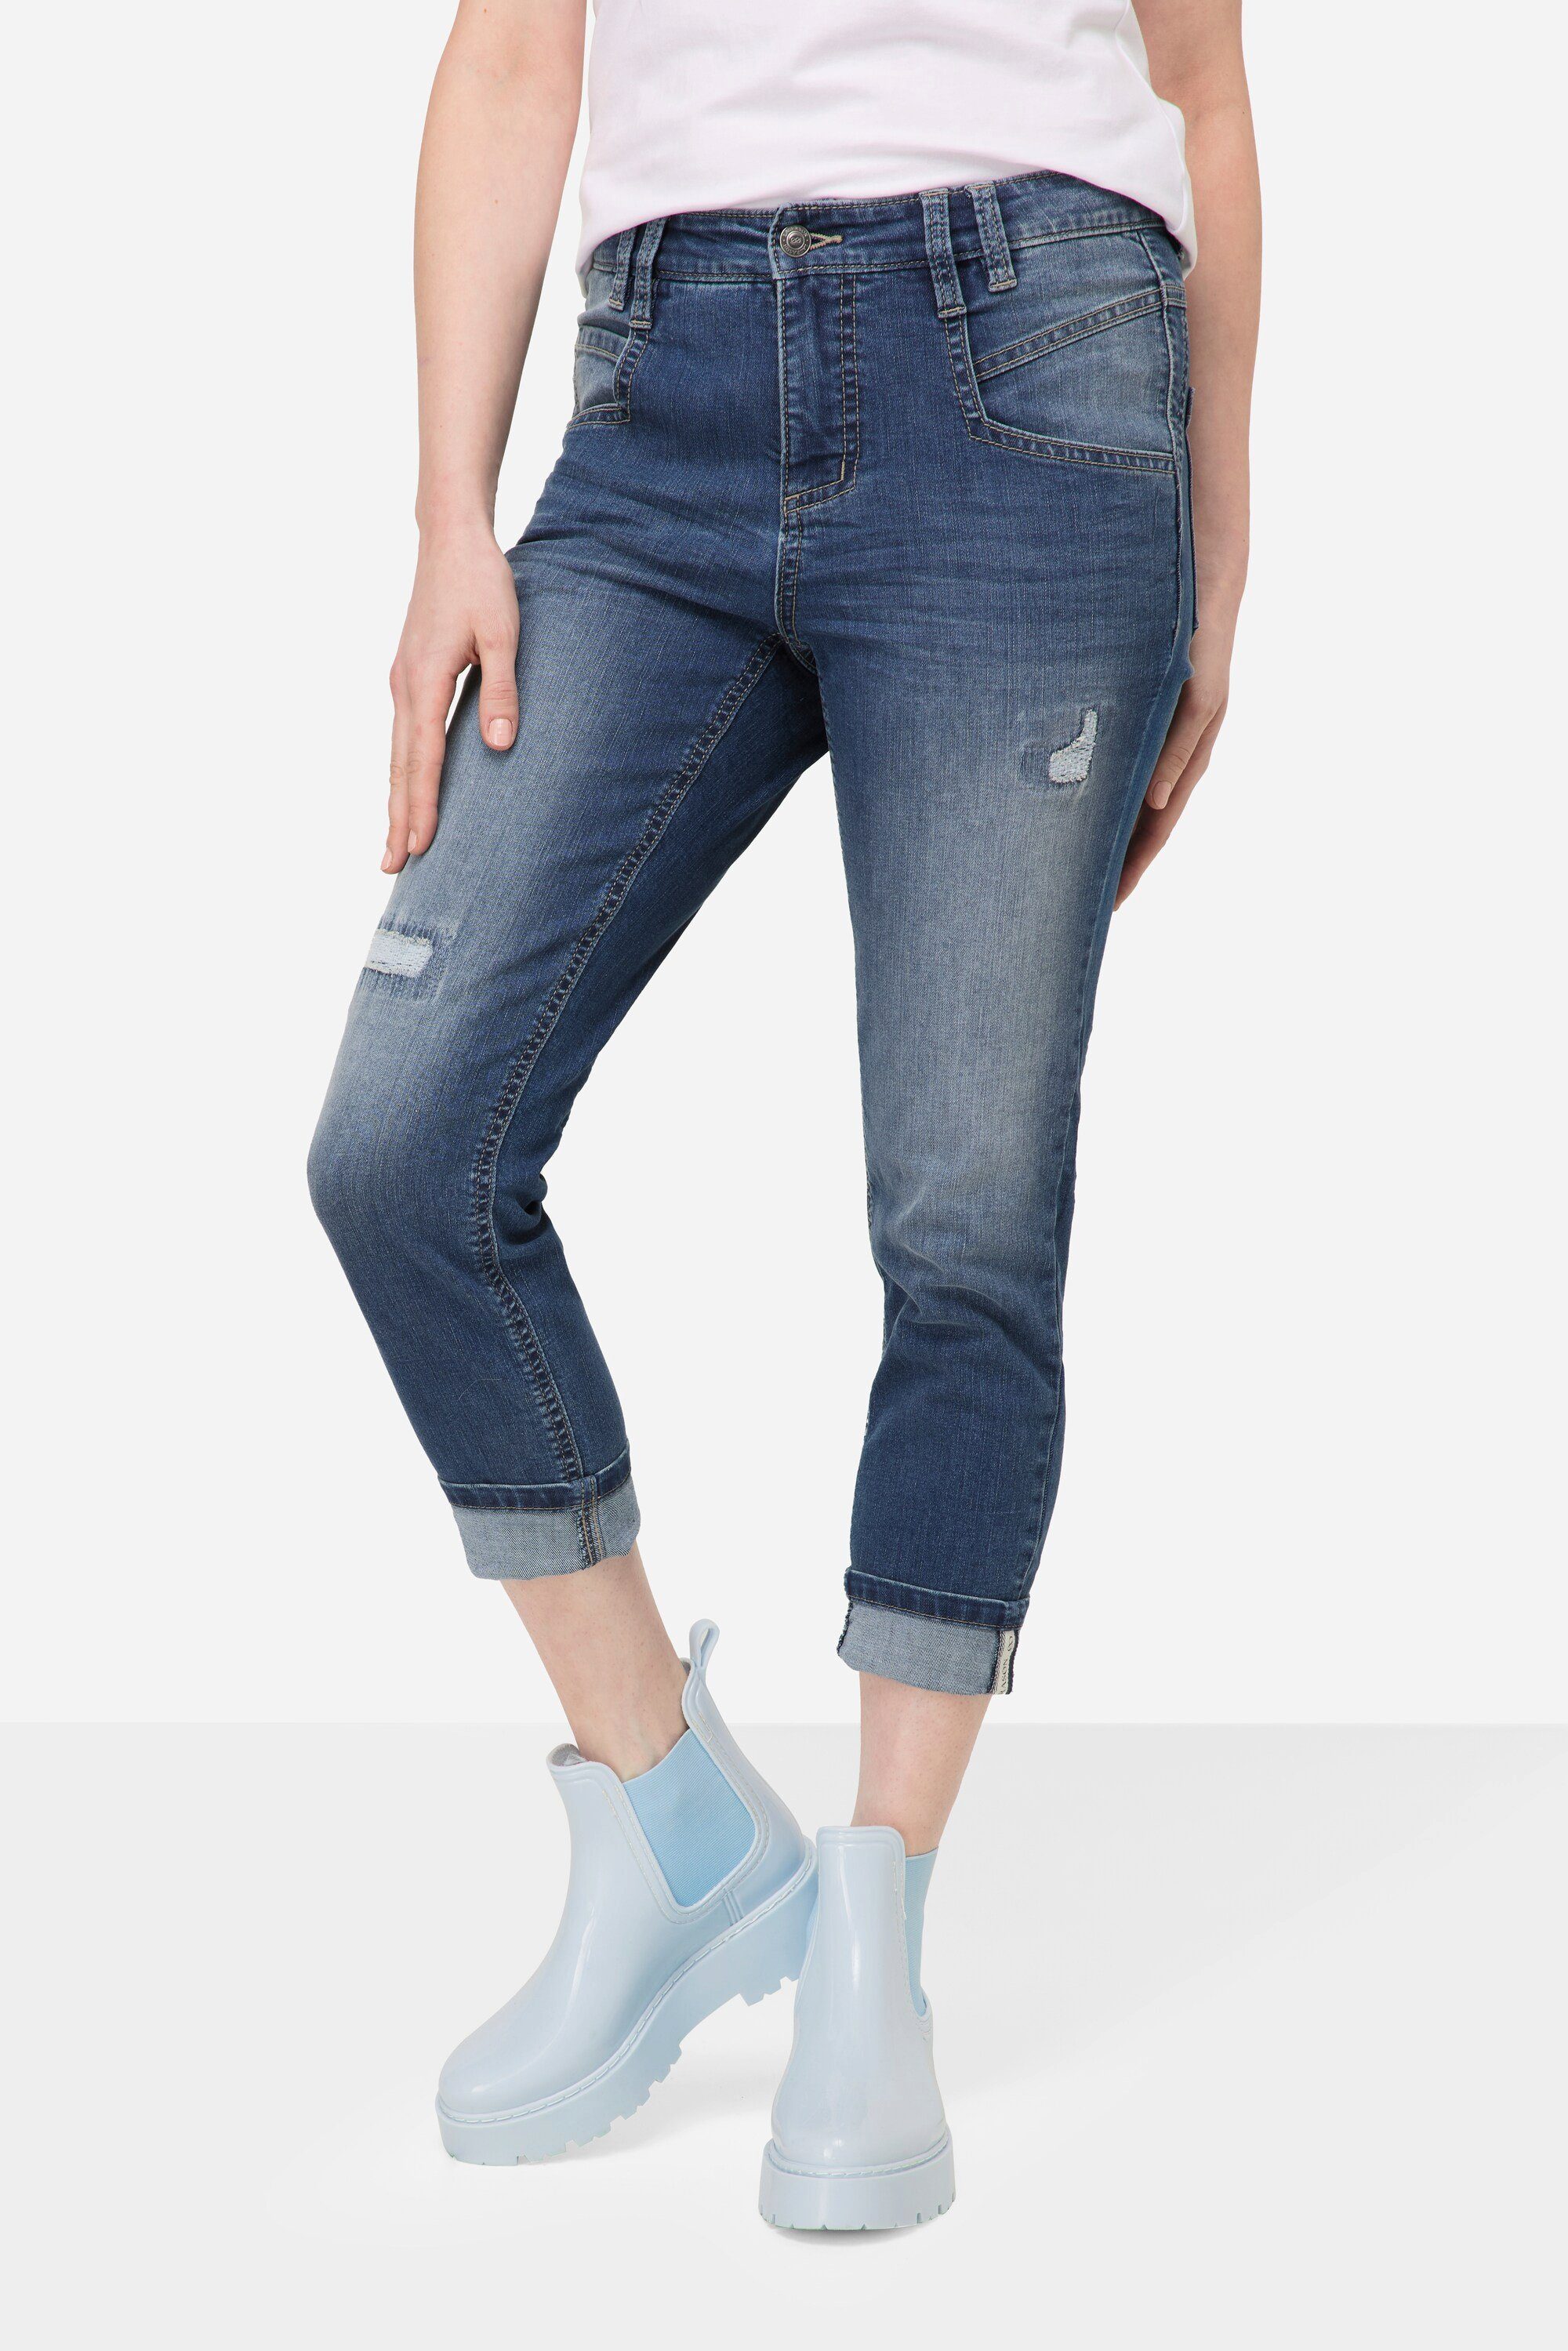 Laurasøn Regular-fit-Jeans 7/8-Jeans Slim Fit Destroy Look 5-Pocket